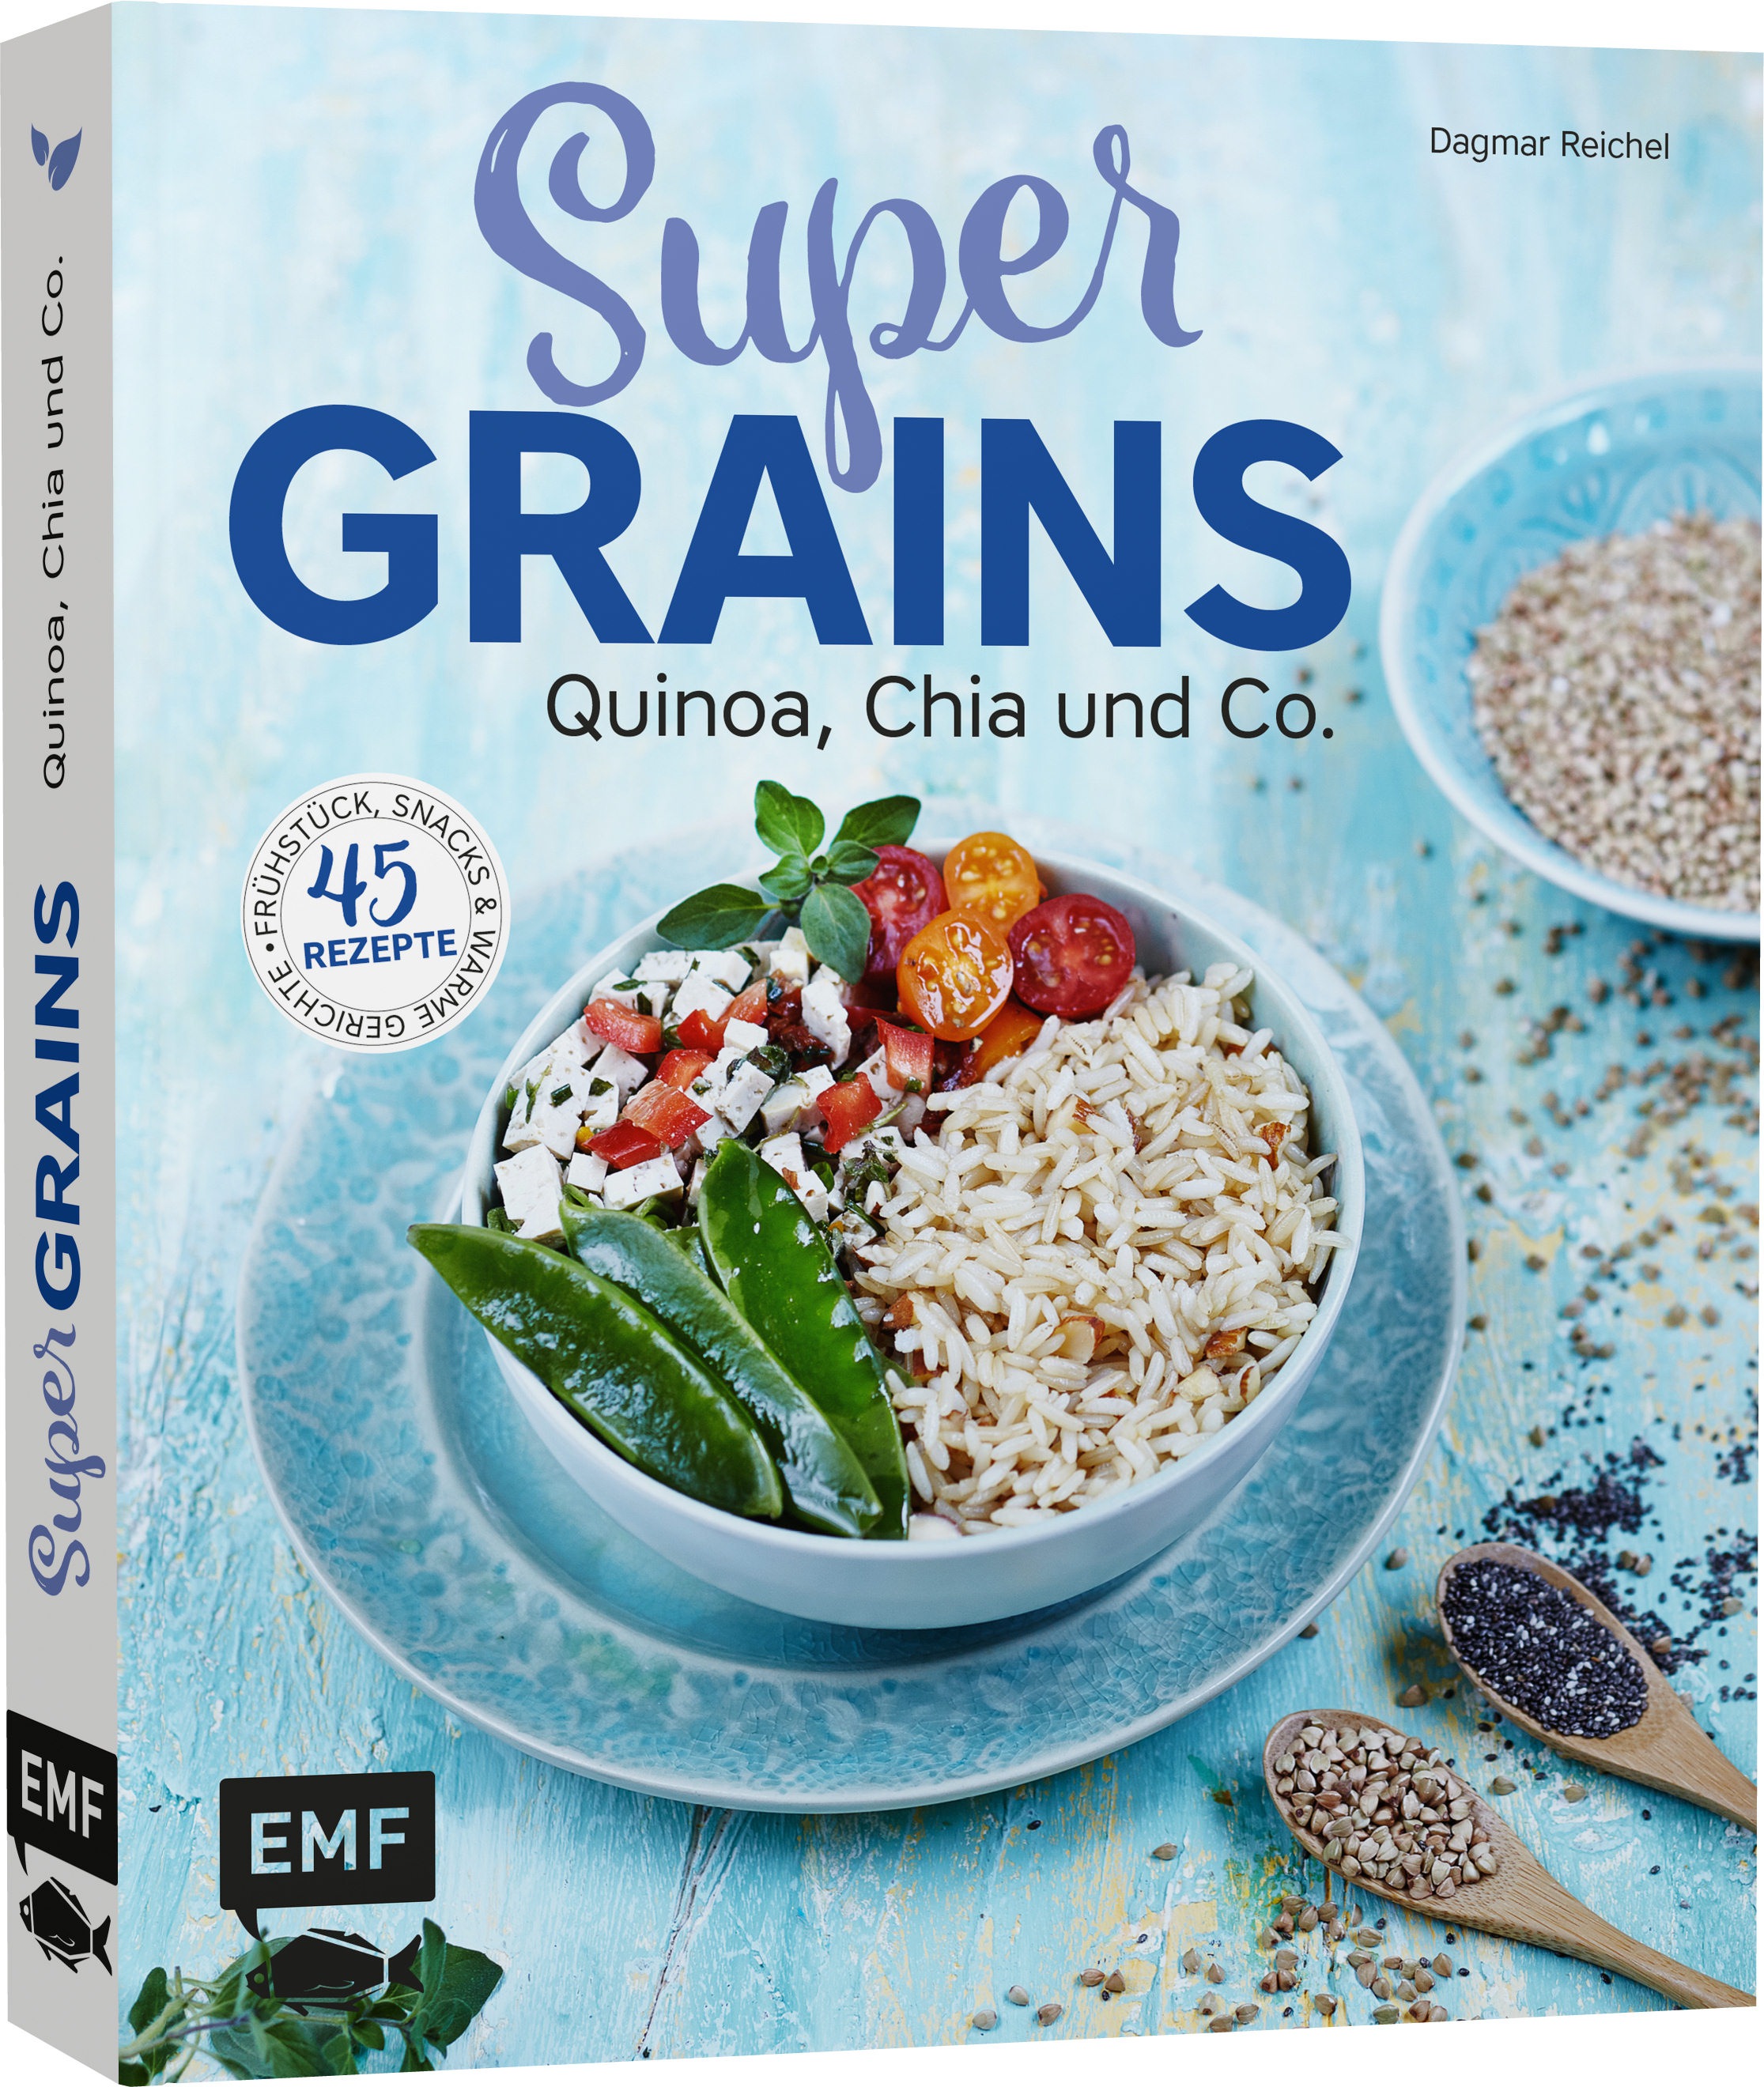 Dagmar Reichel - Supergrains – Quinoa, Chia und Co.